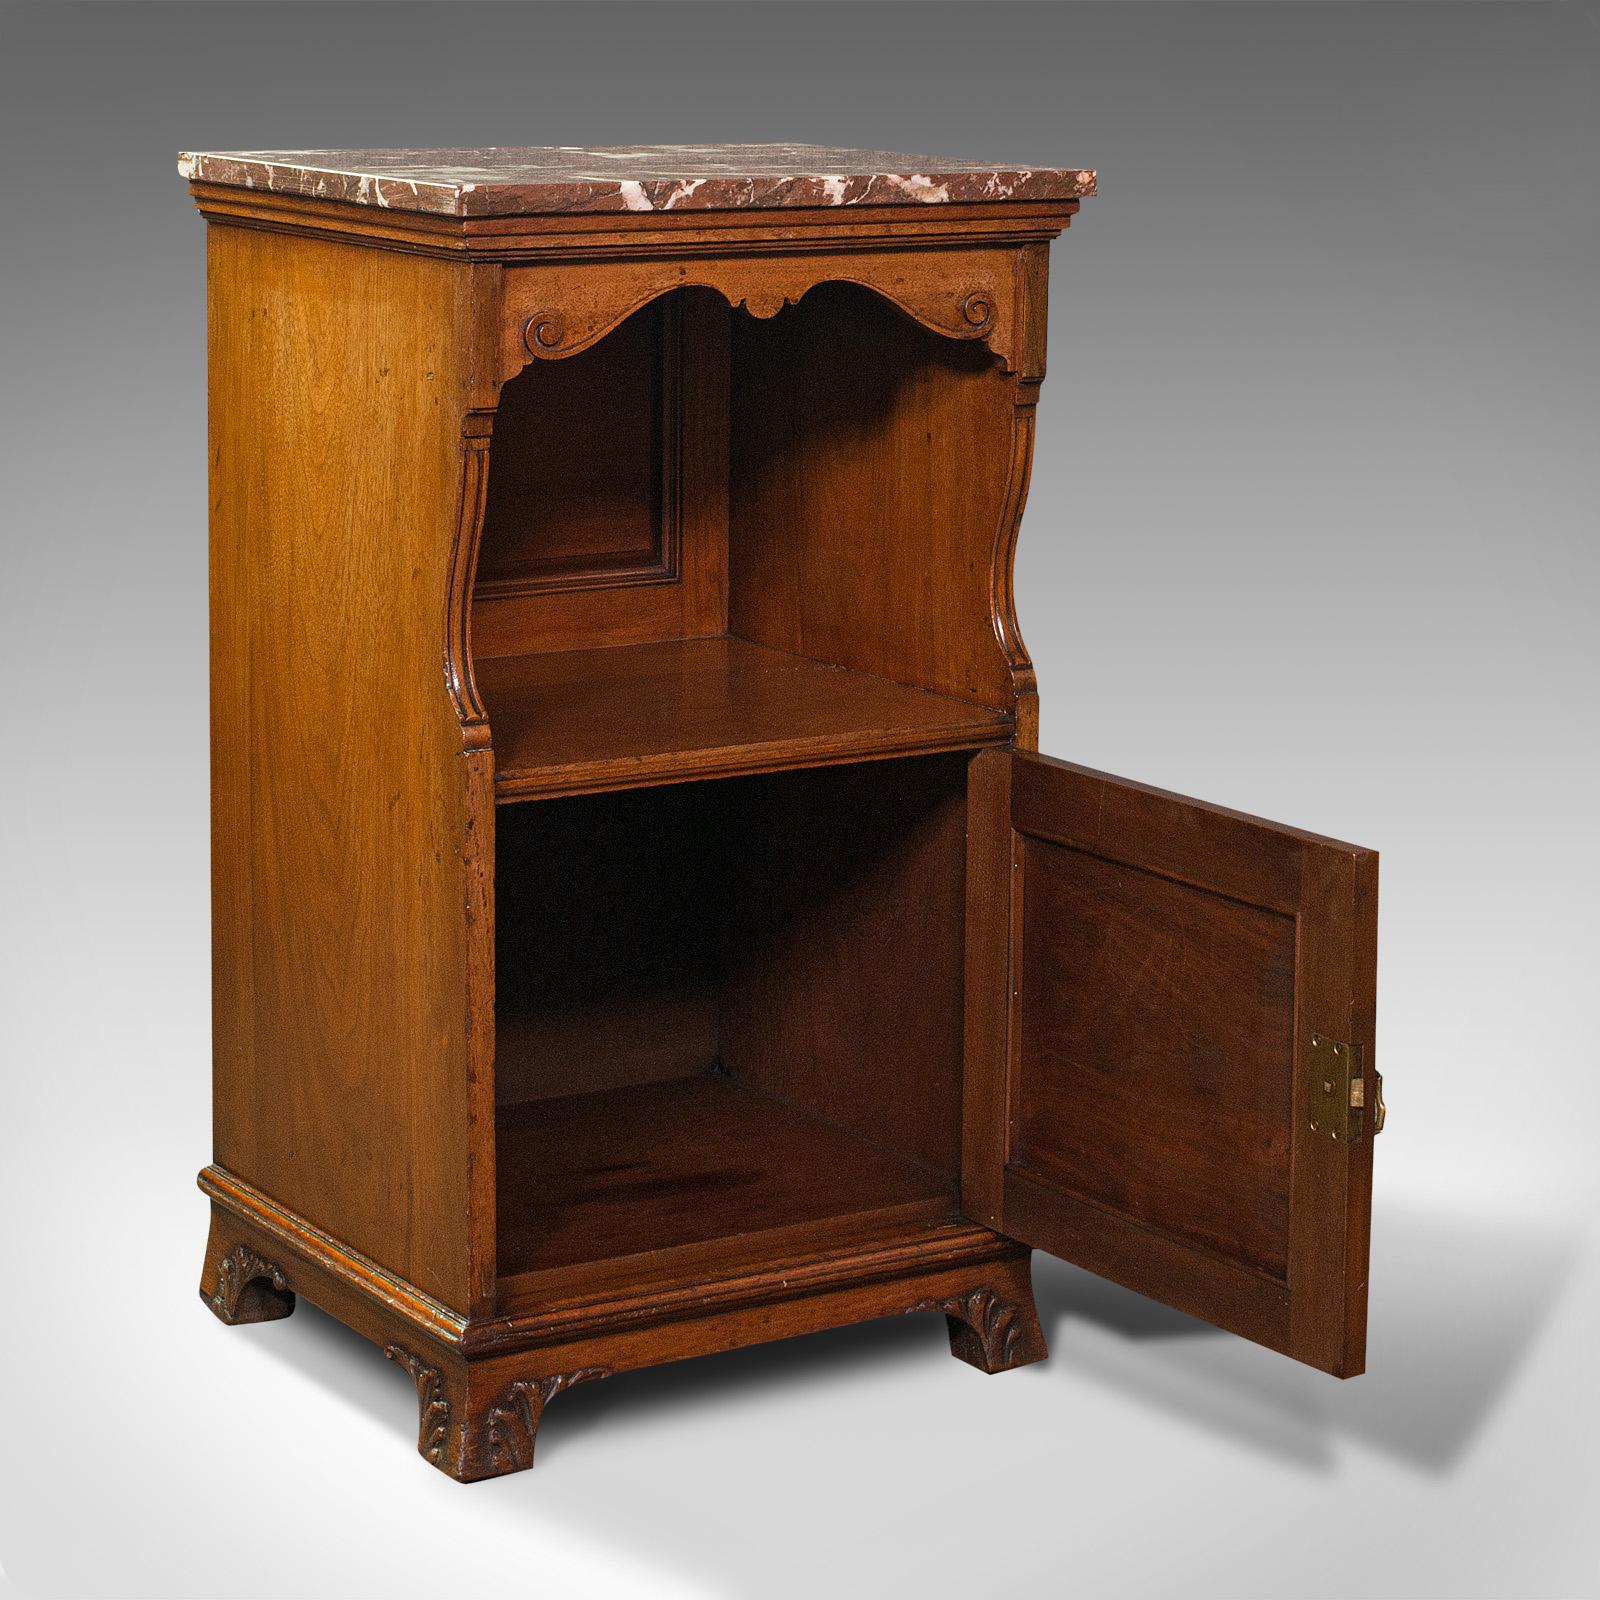 Dies ist ein antiker Nachttisch. Ein englischer Topf- oder Nachttisch aus Nussbaum und Marmor von Gillow & Co aus Lancaster, aus der viktorianischen Zeit, um 1890.

Geschmackvoll eingerichtet und von ansprechender Proportion
Zeigt eine